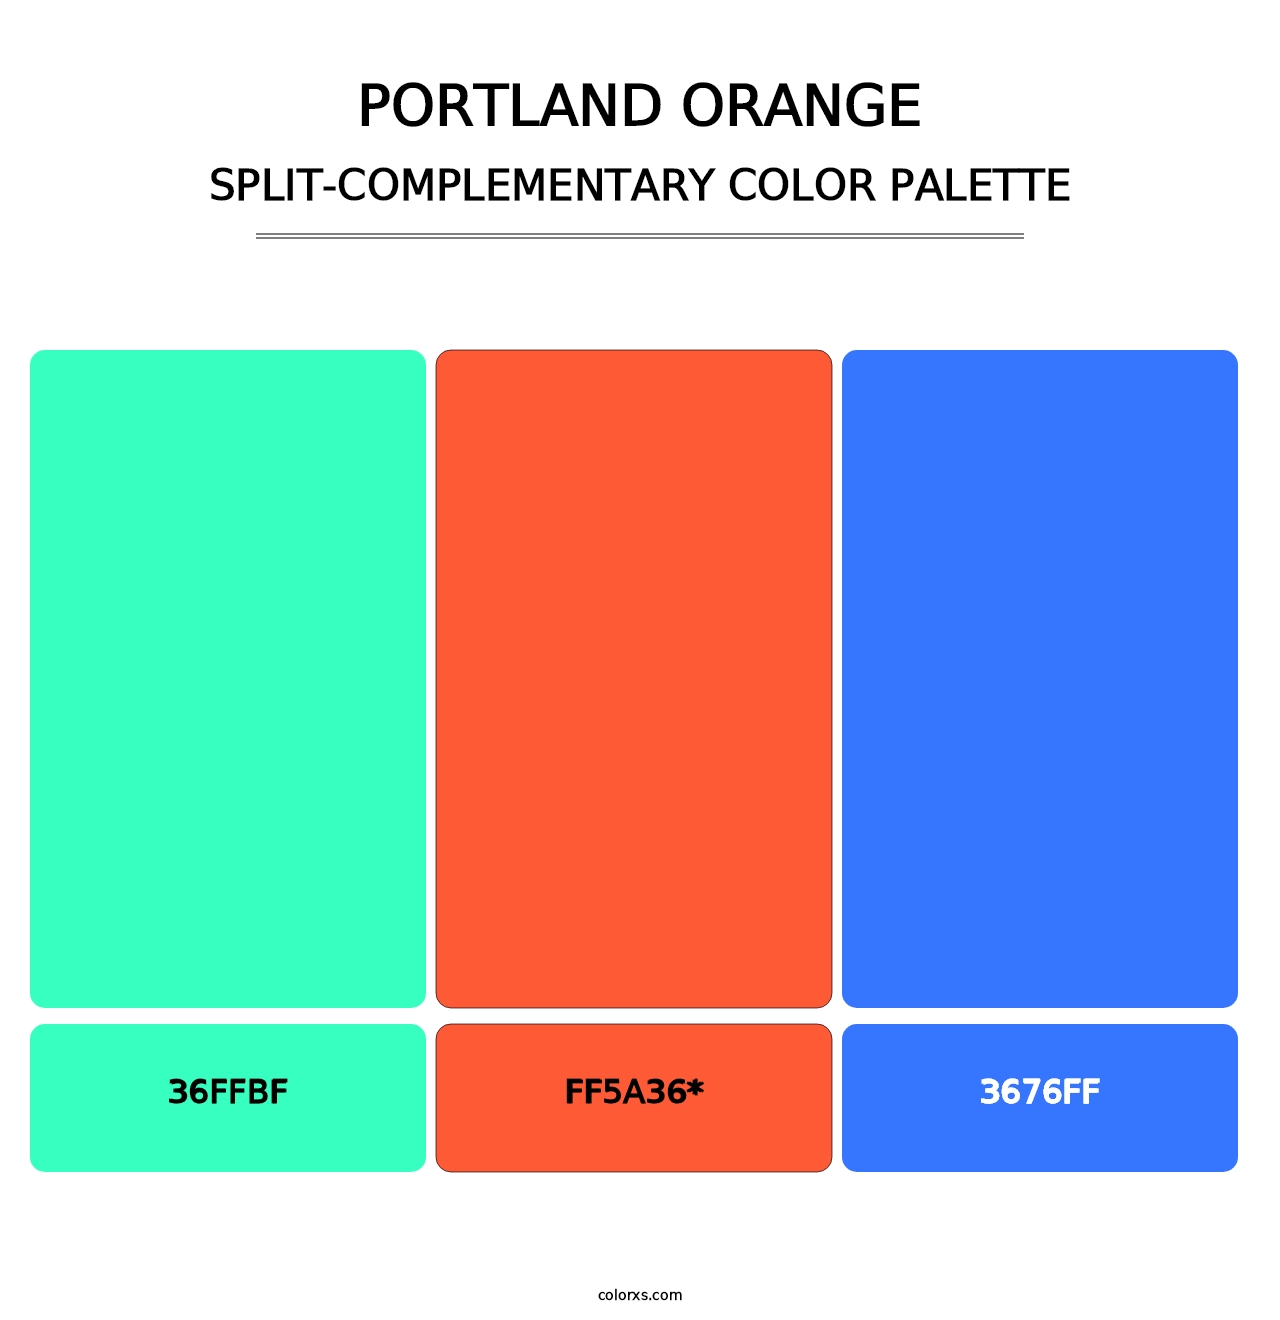 Portland Orange - Split-Complementary Color Palette